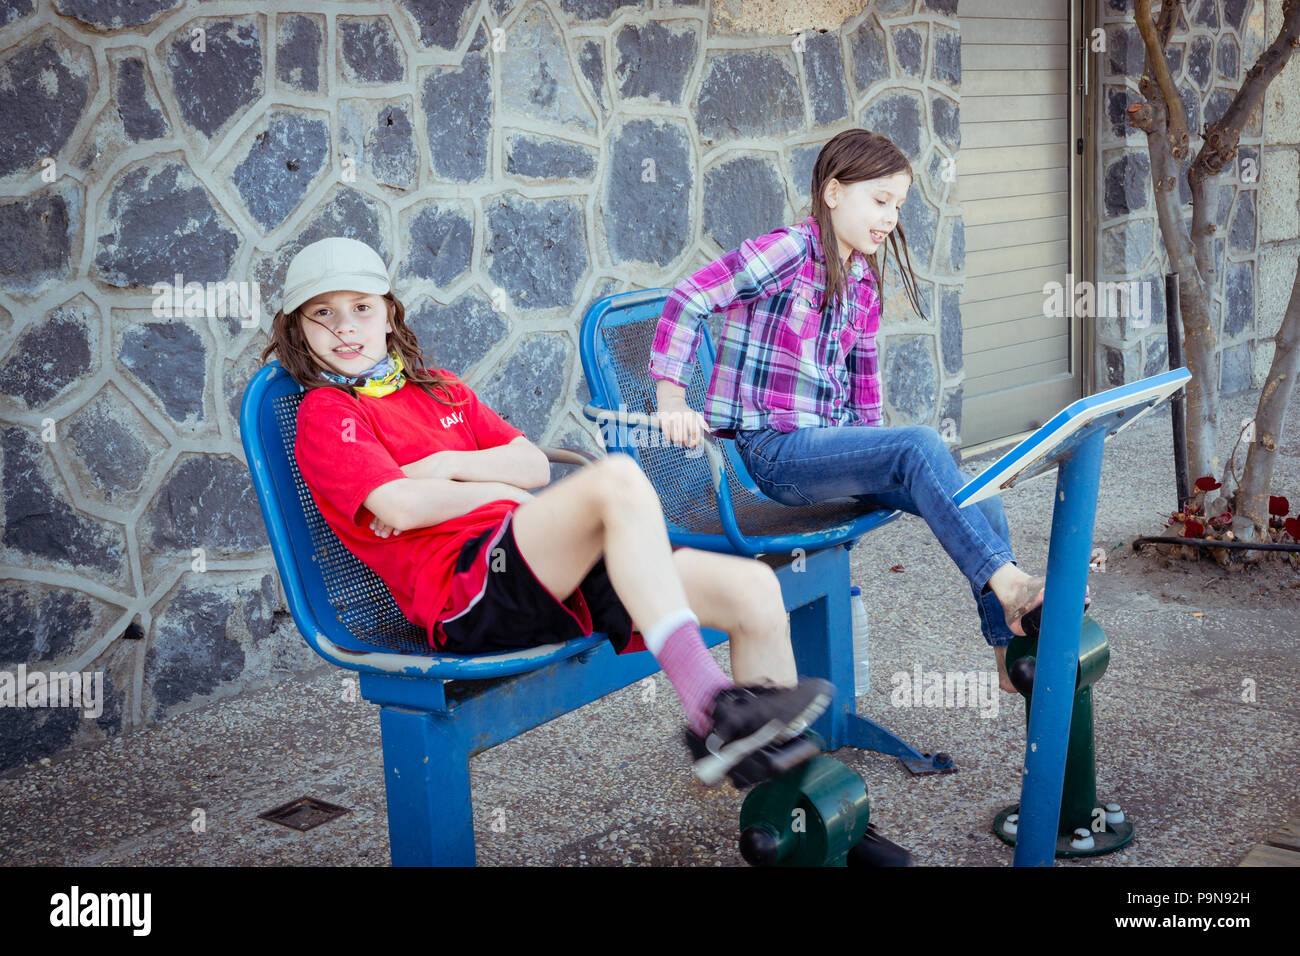 Zwei kaukasische Mädchen Kinder trainieren mit erwachsenen Größe outdoor Fitnessgeräte, Fahrrad-Pedale mit Sitzen, auf der öffentlichen Straße. Stockfoto